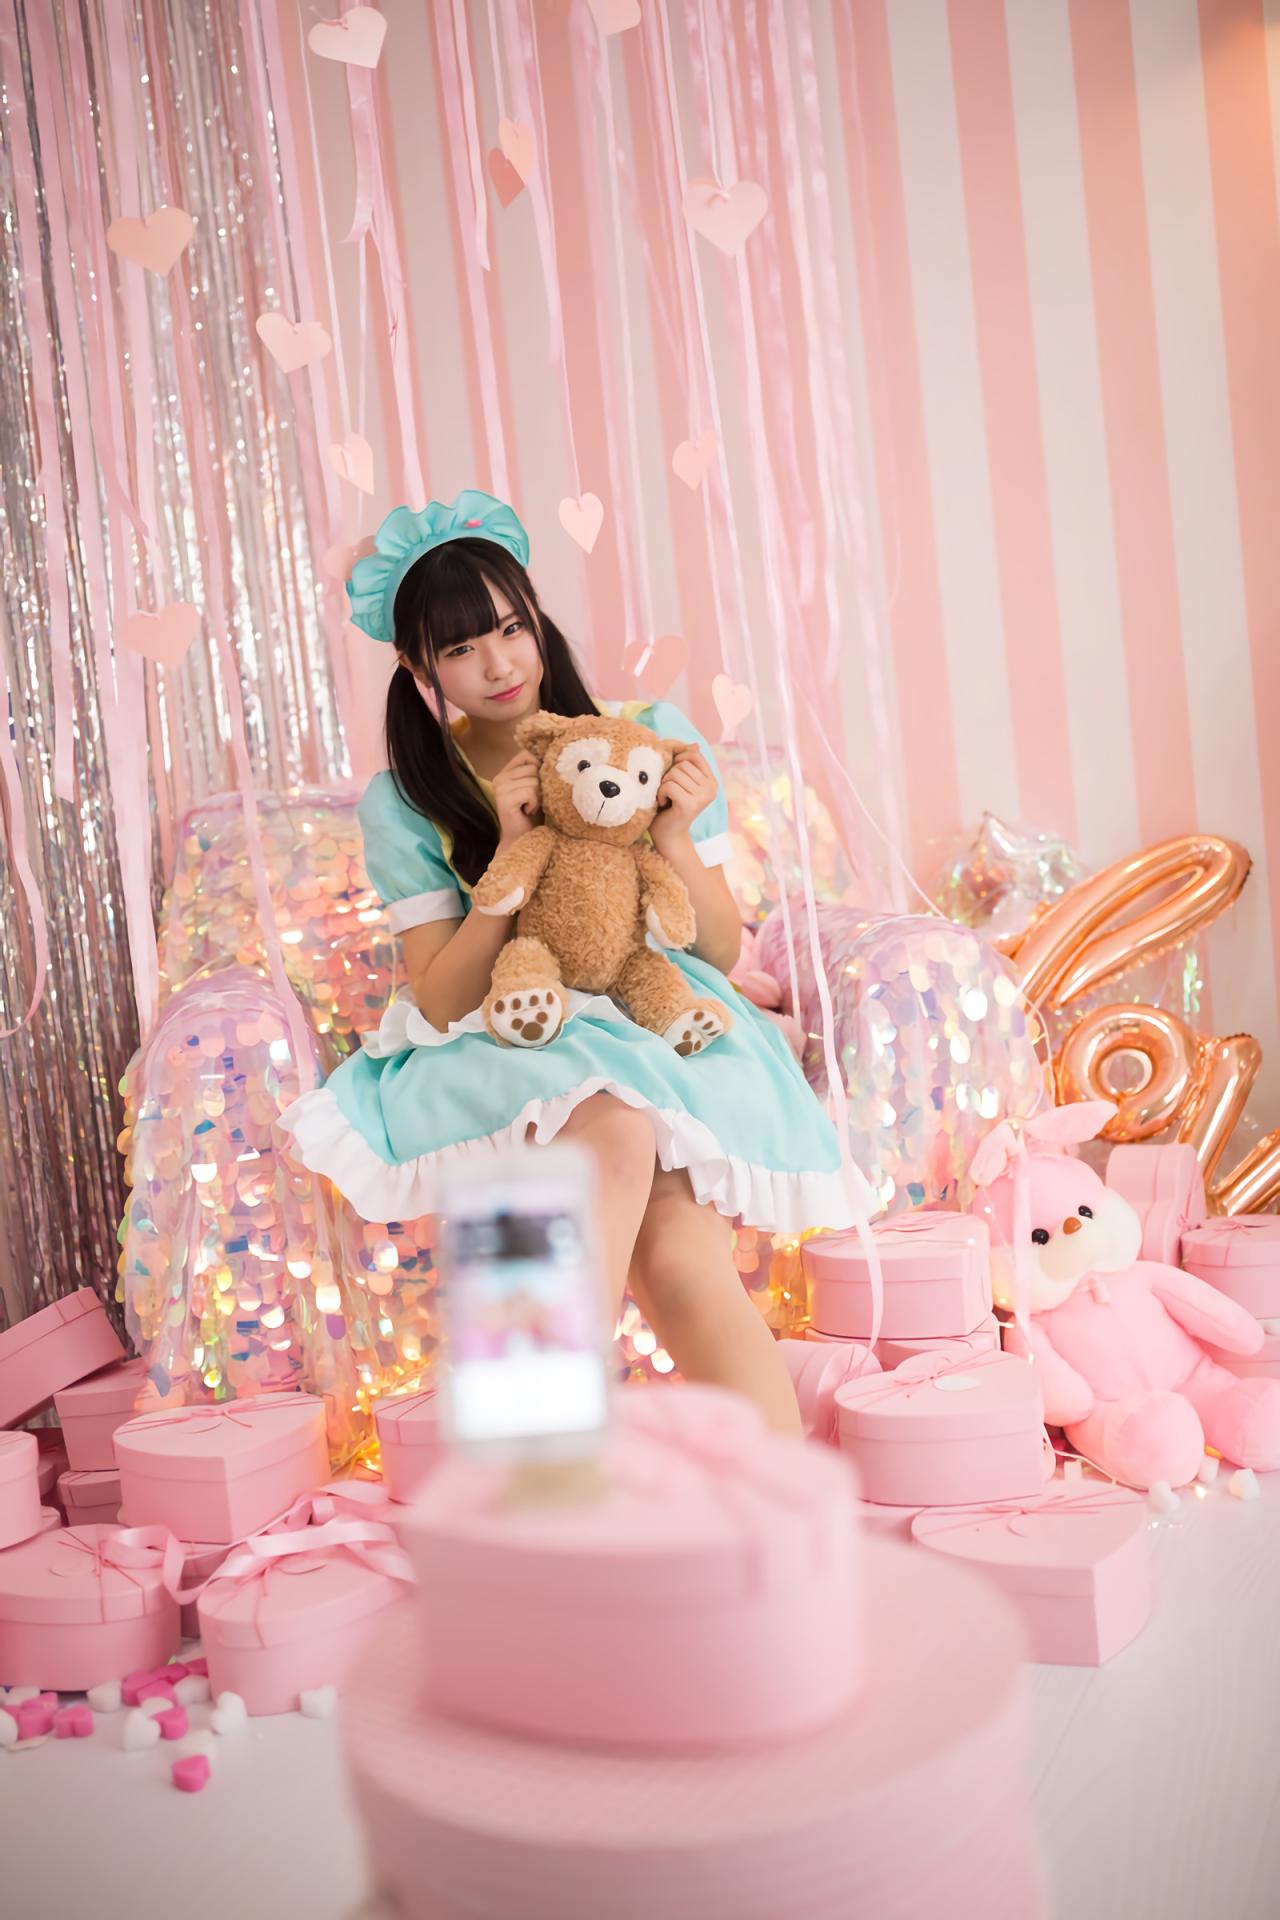 谷口彩菜抱着小熊坐在沙发上 身旁放满了粉色桃心礼盒 全身照